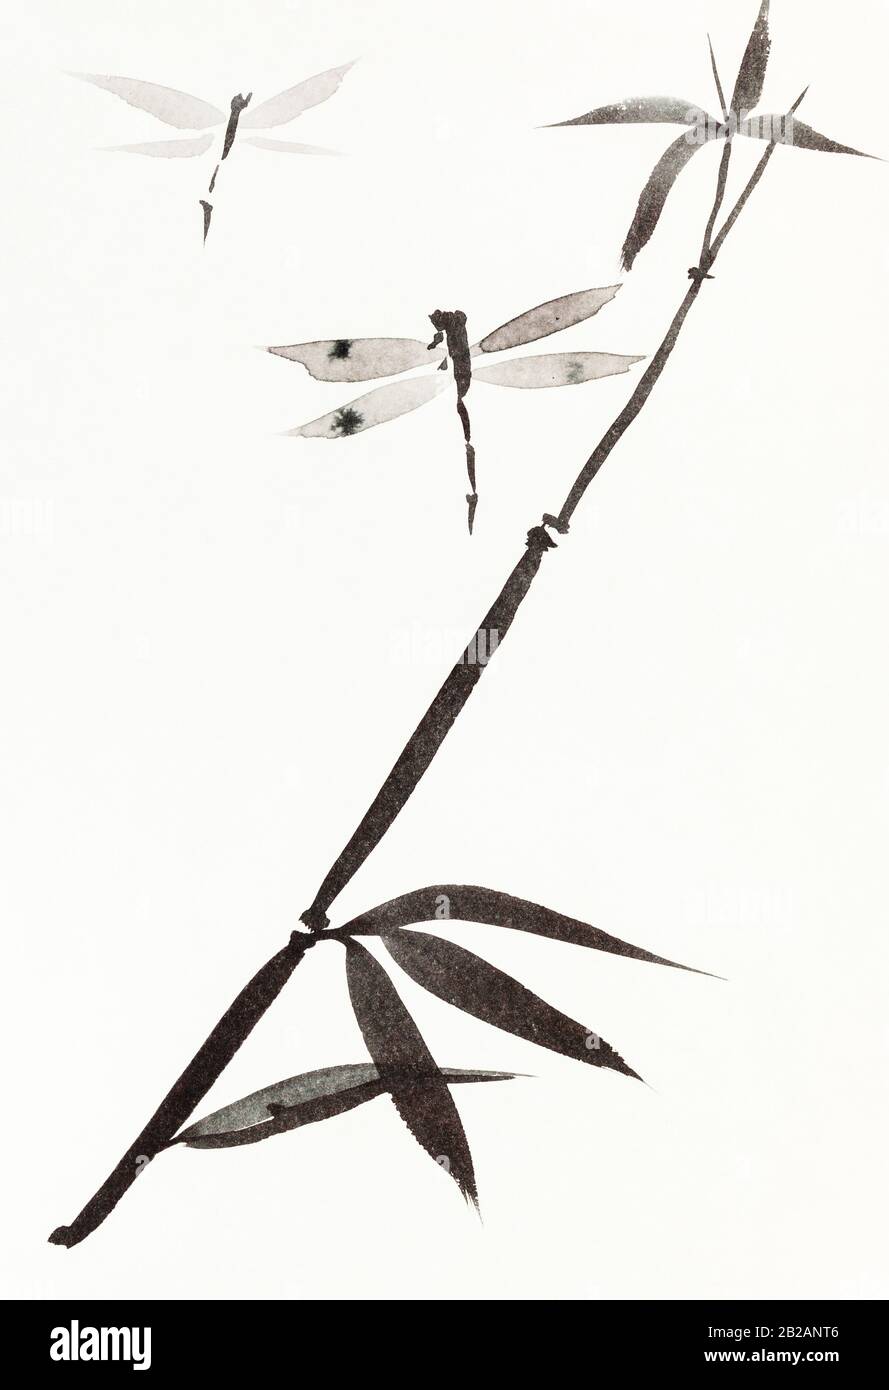 libellules et branche de roseau dessinée à la main par l'aquarelle noire sur du papier crémeux-blanc dans le style sumi-e (suibokuga) Banque D'Images